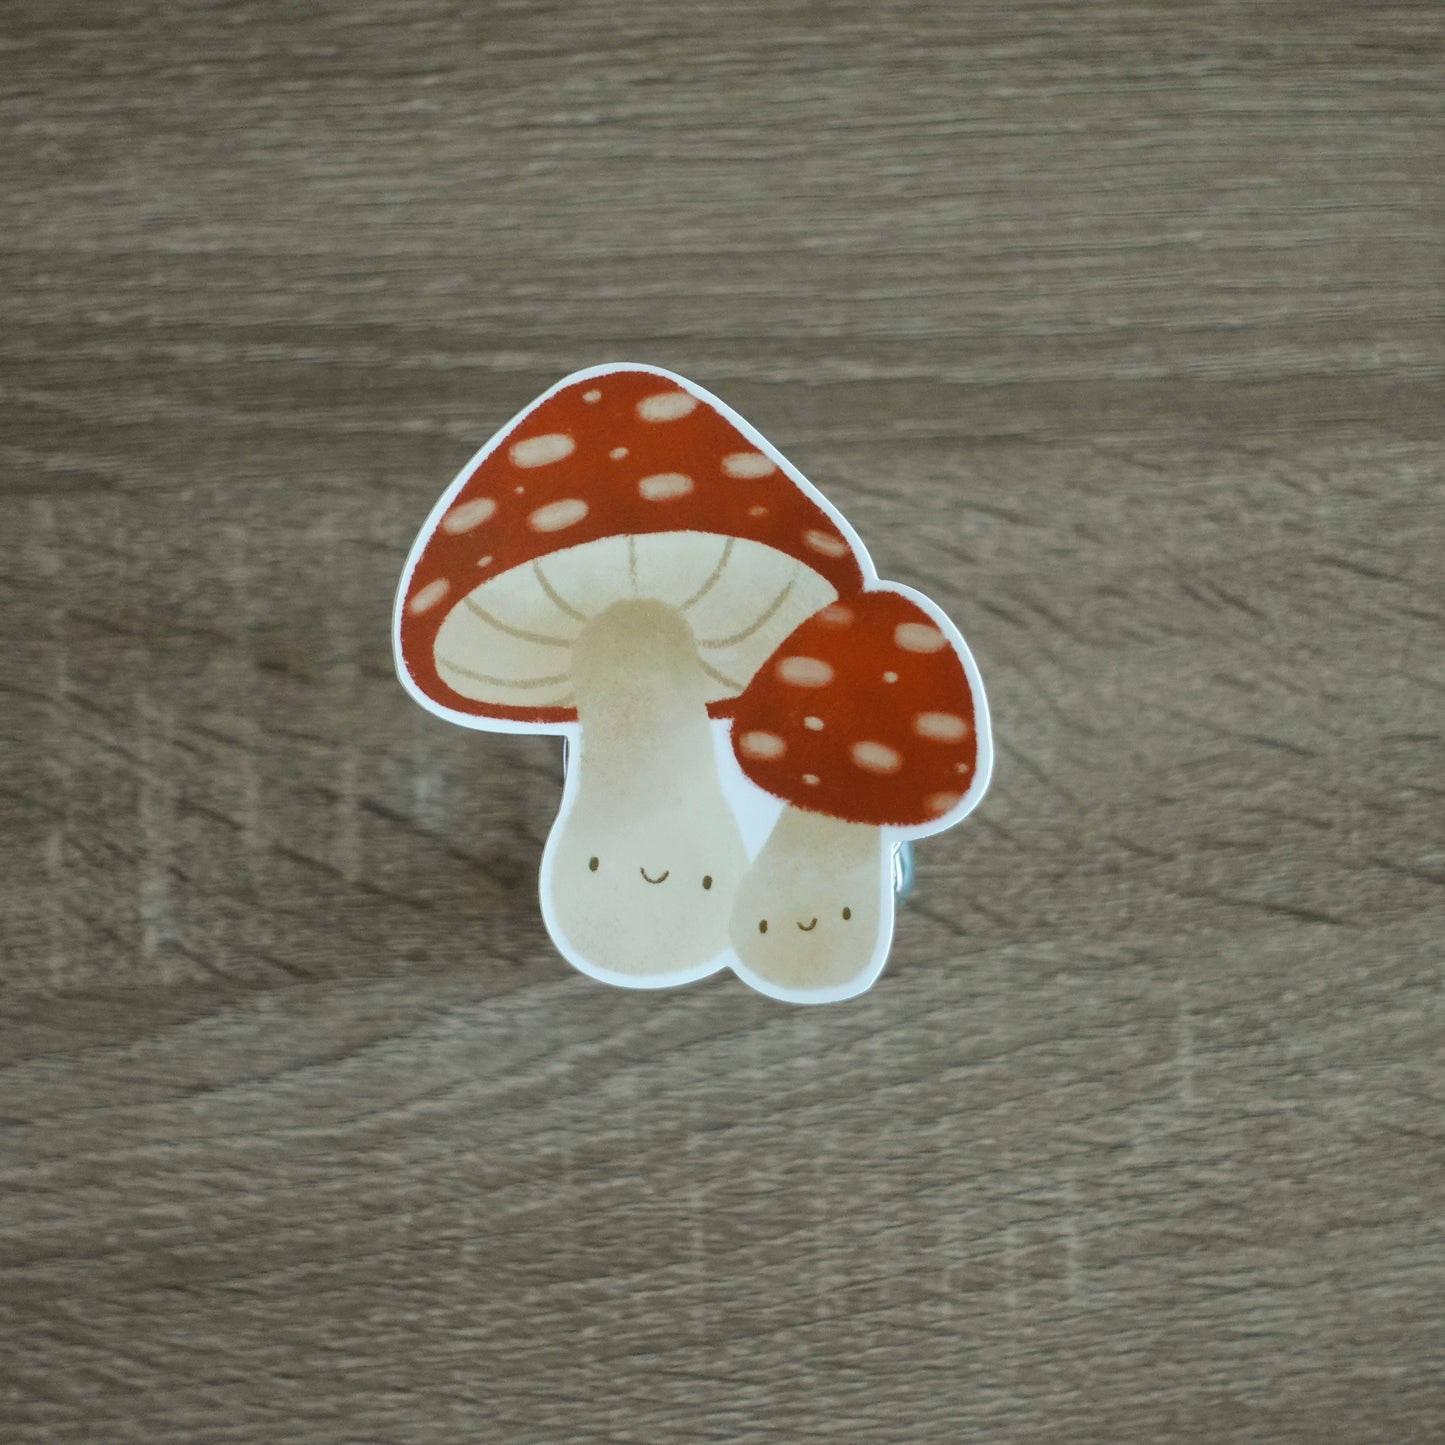 Fungus Friends - Mushroom Die Cut Vinyl Sticker